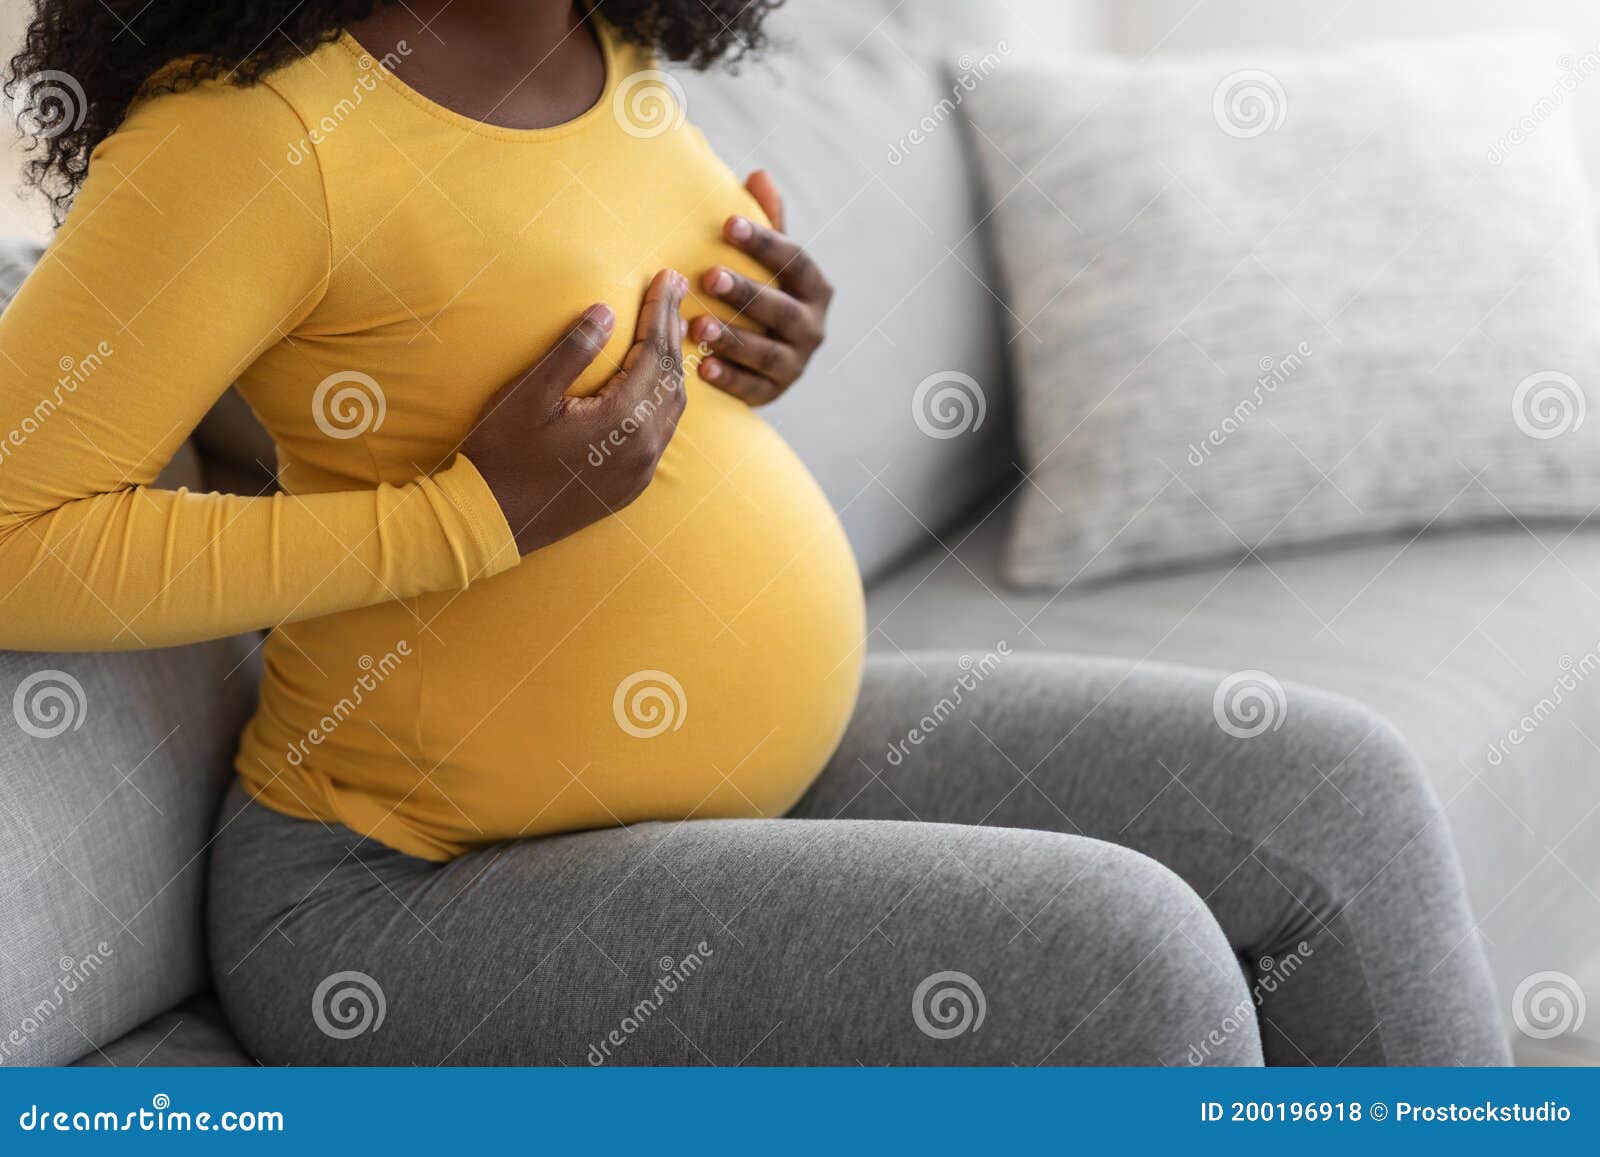 Pregnant Breast